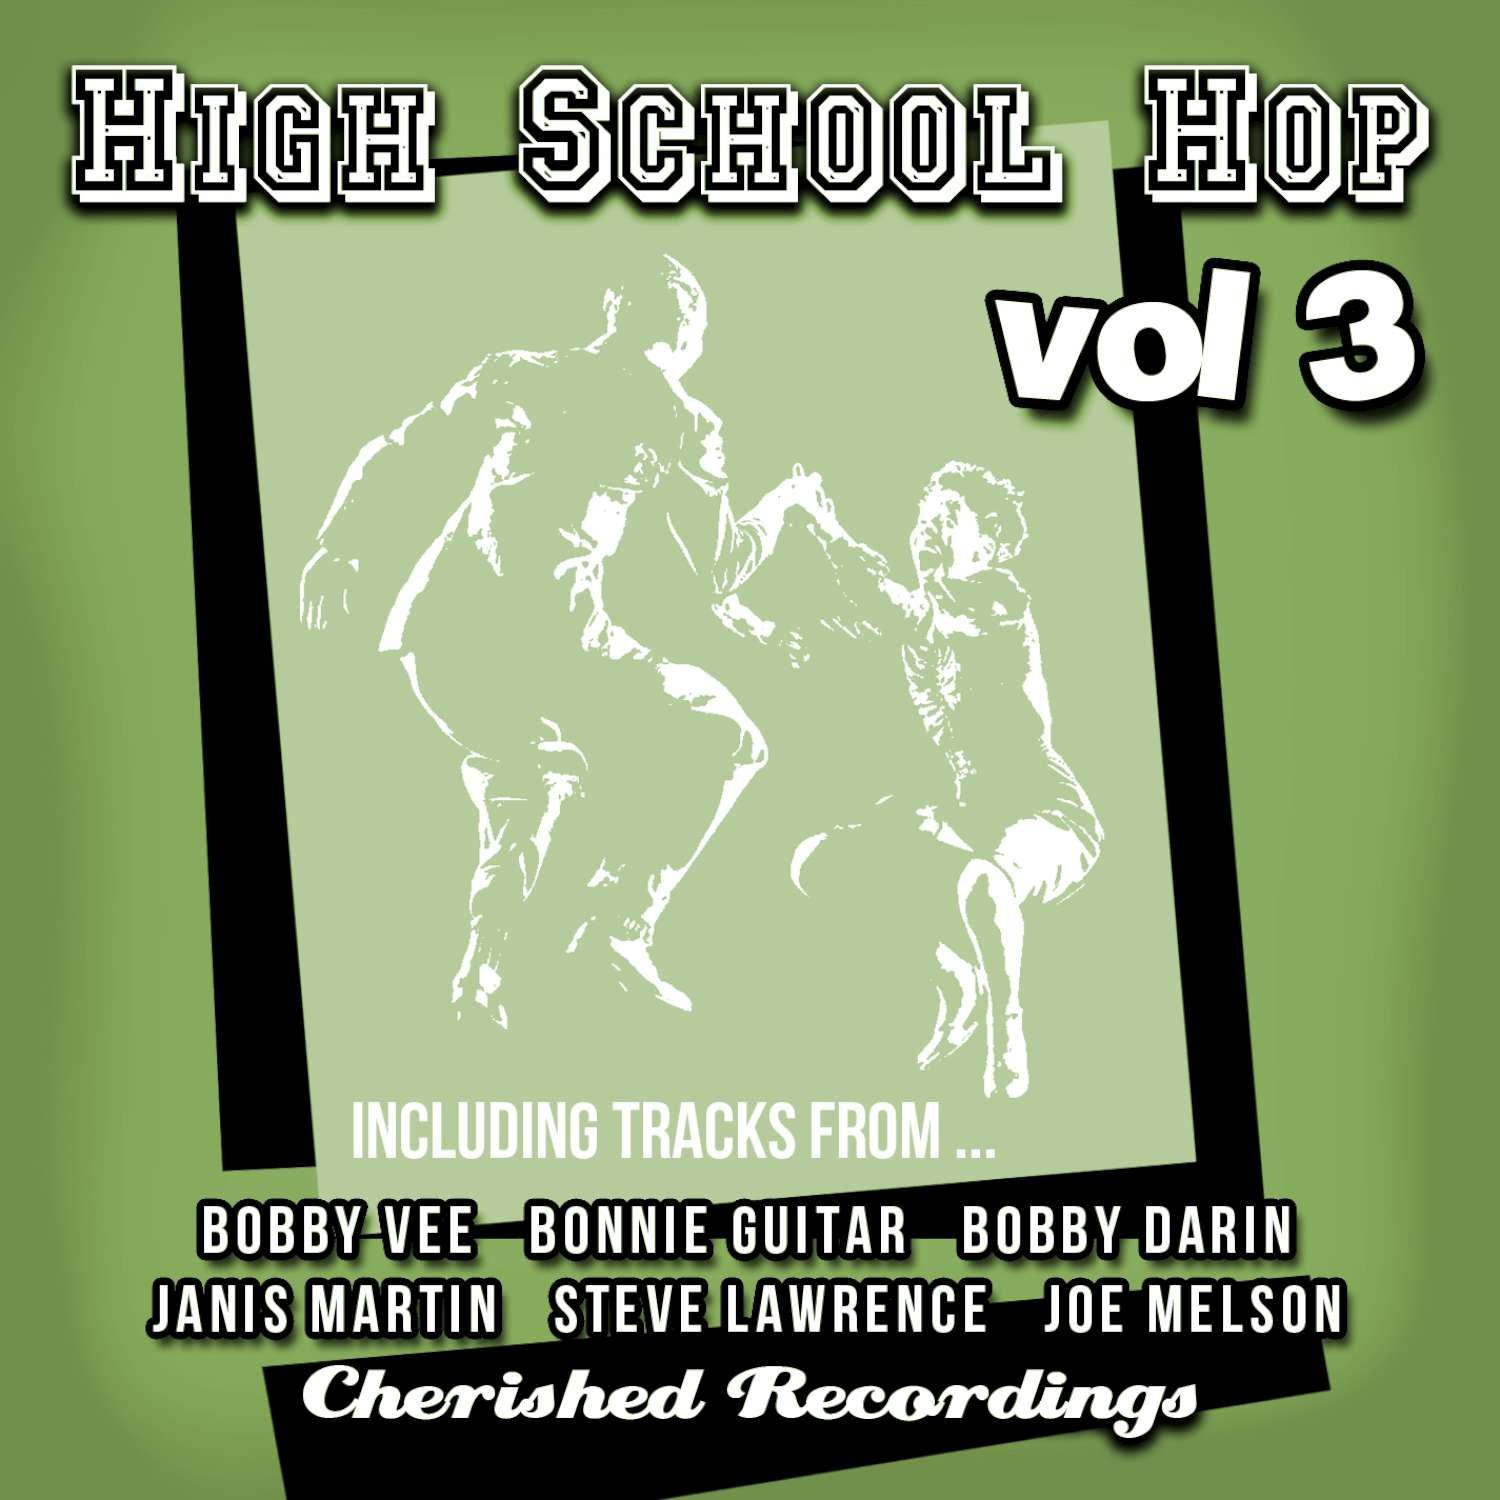 High School Hop, Vol. 3